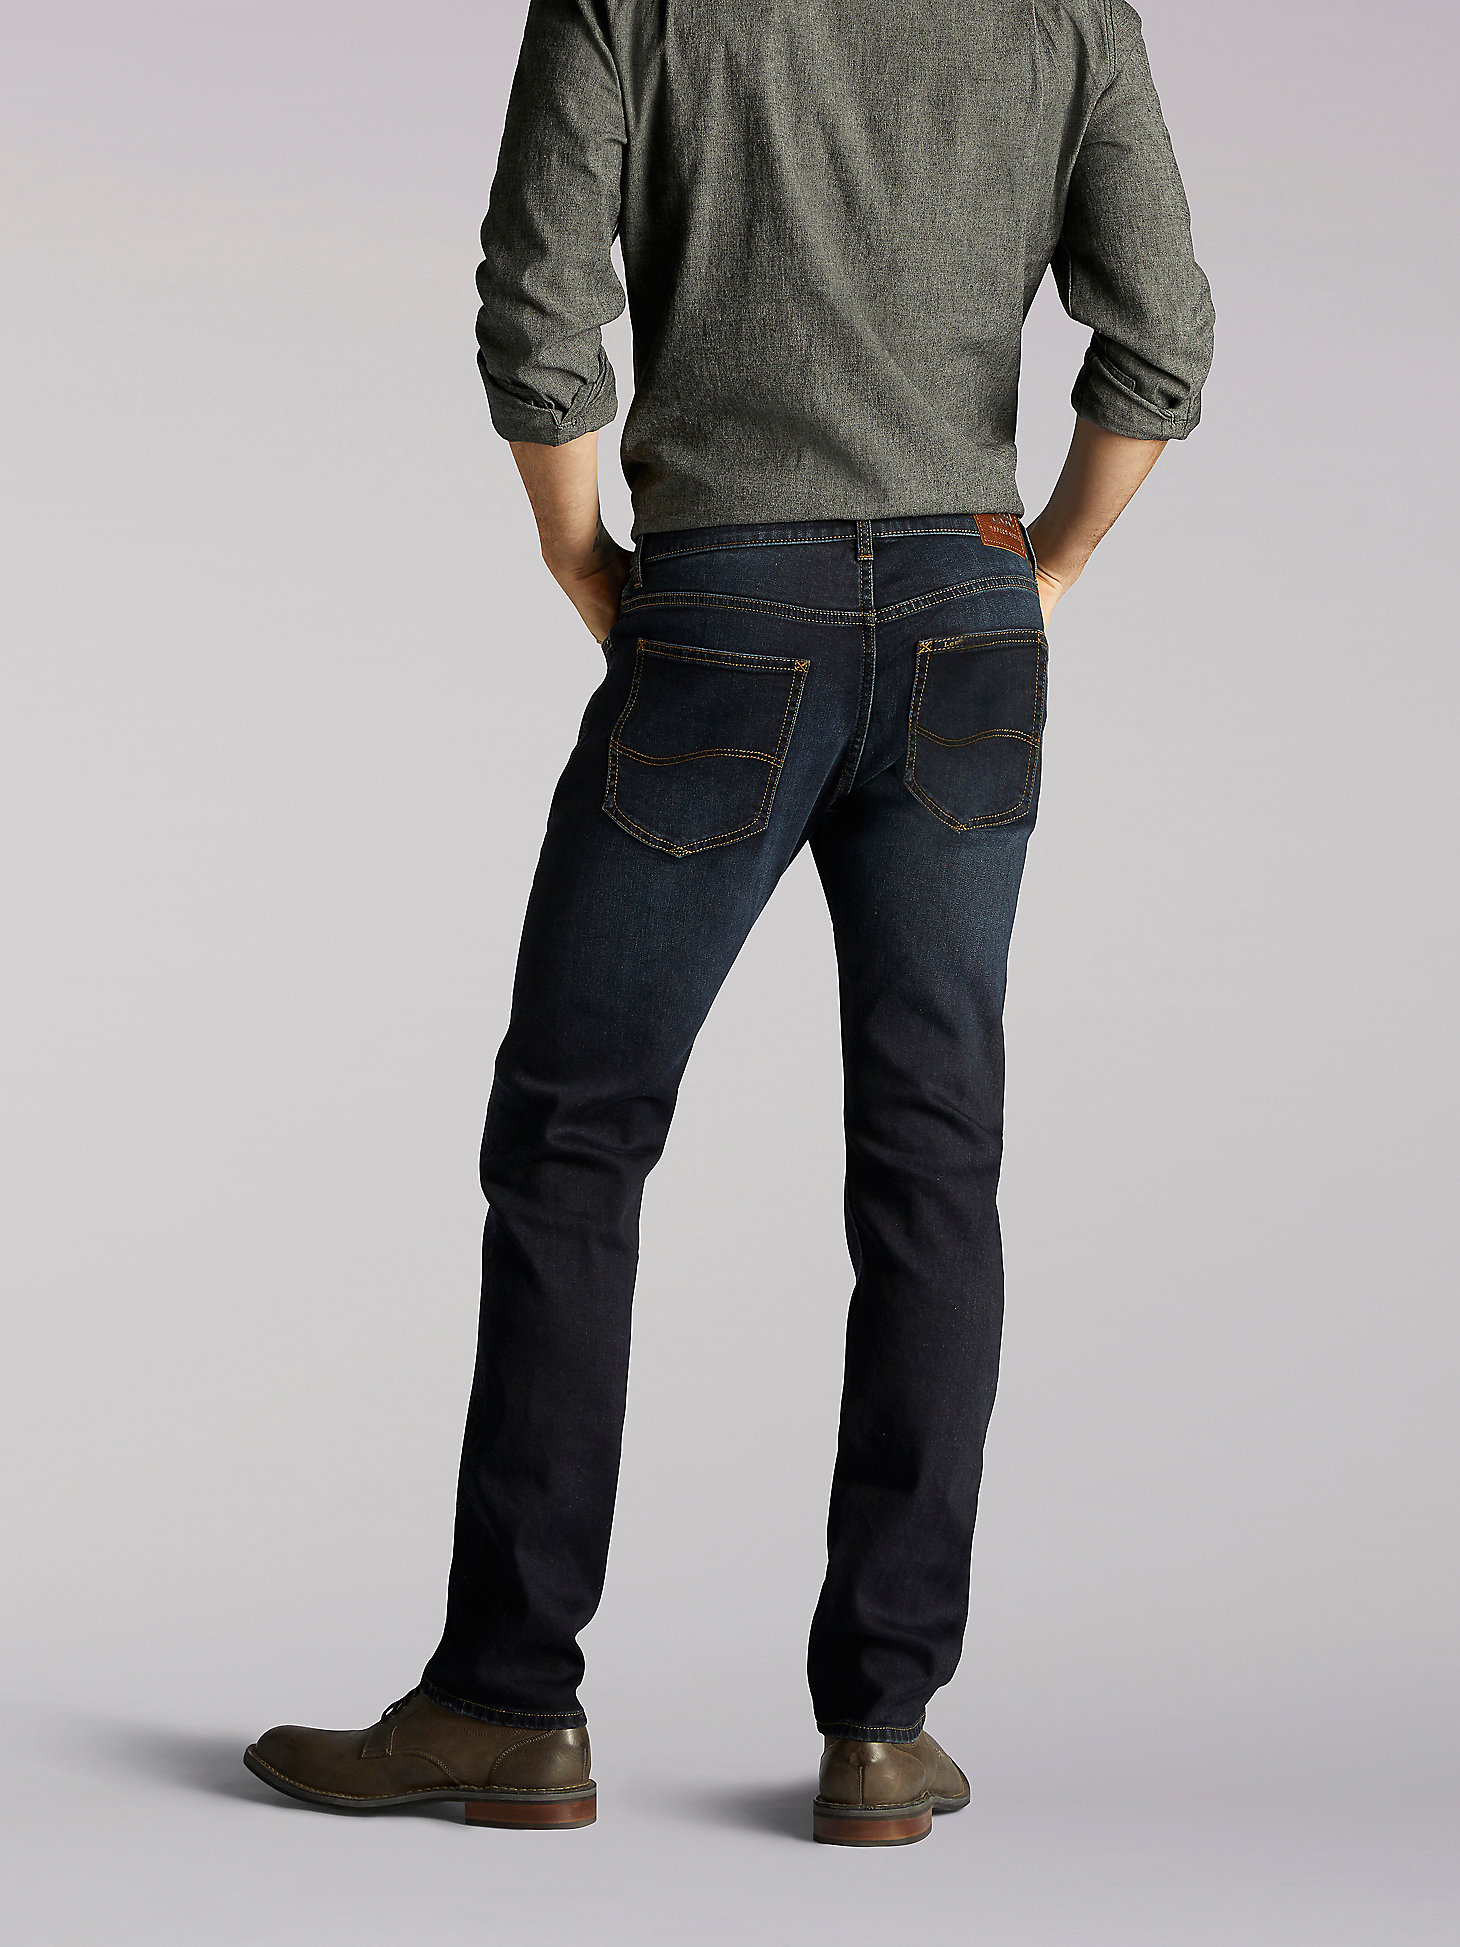 LEE Mens Modern Series Slim-fit Tapered-Leg Jean